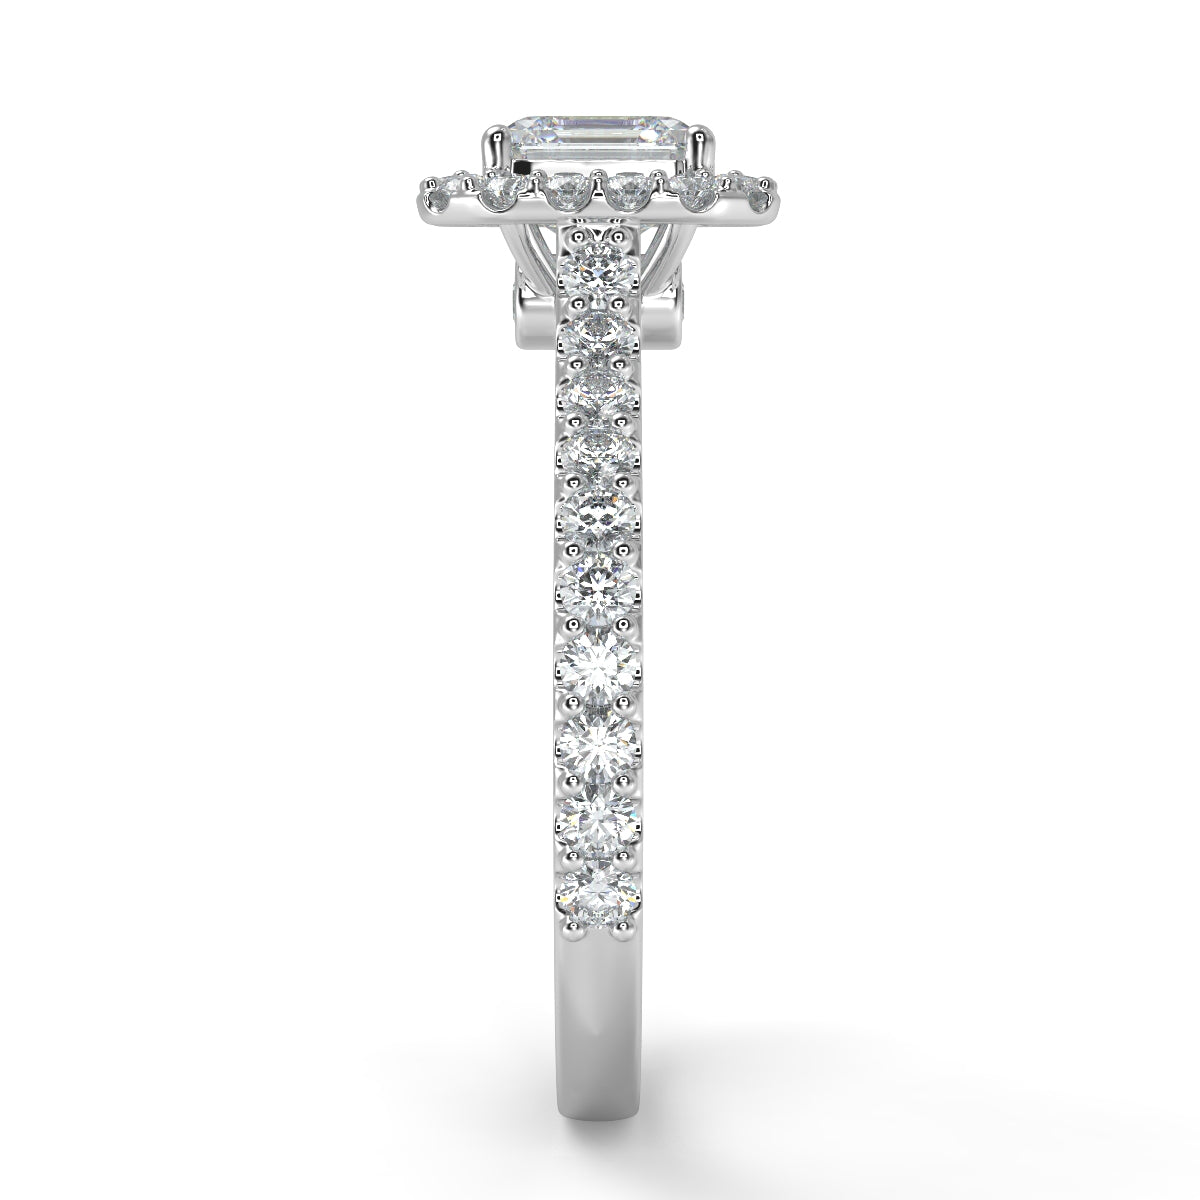 Marie シークレットストーンヘイローリング クッションカットダイヤモンドリング ダイヤモンド/ラボグロウンダイヤモンド 縦真横からの画像